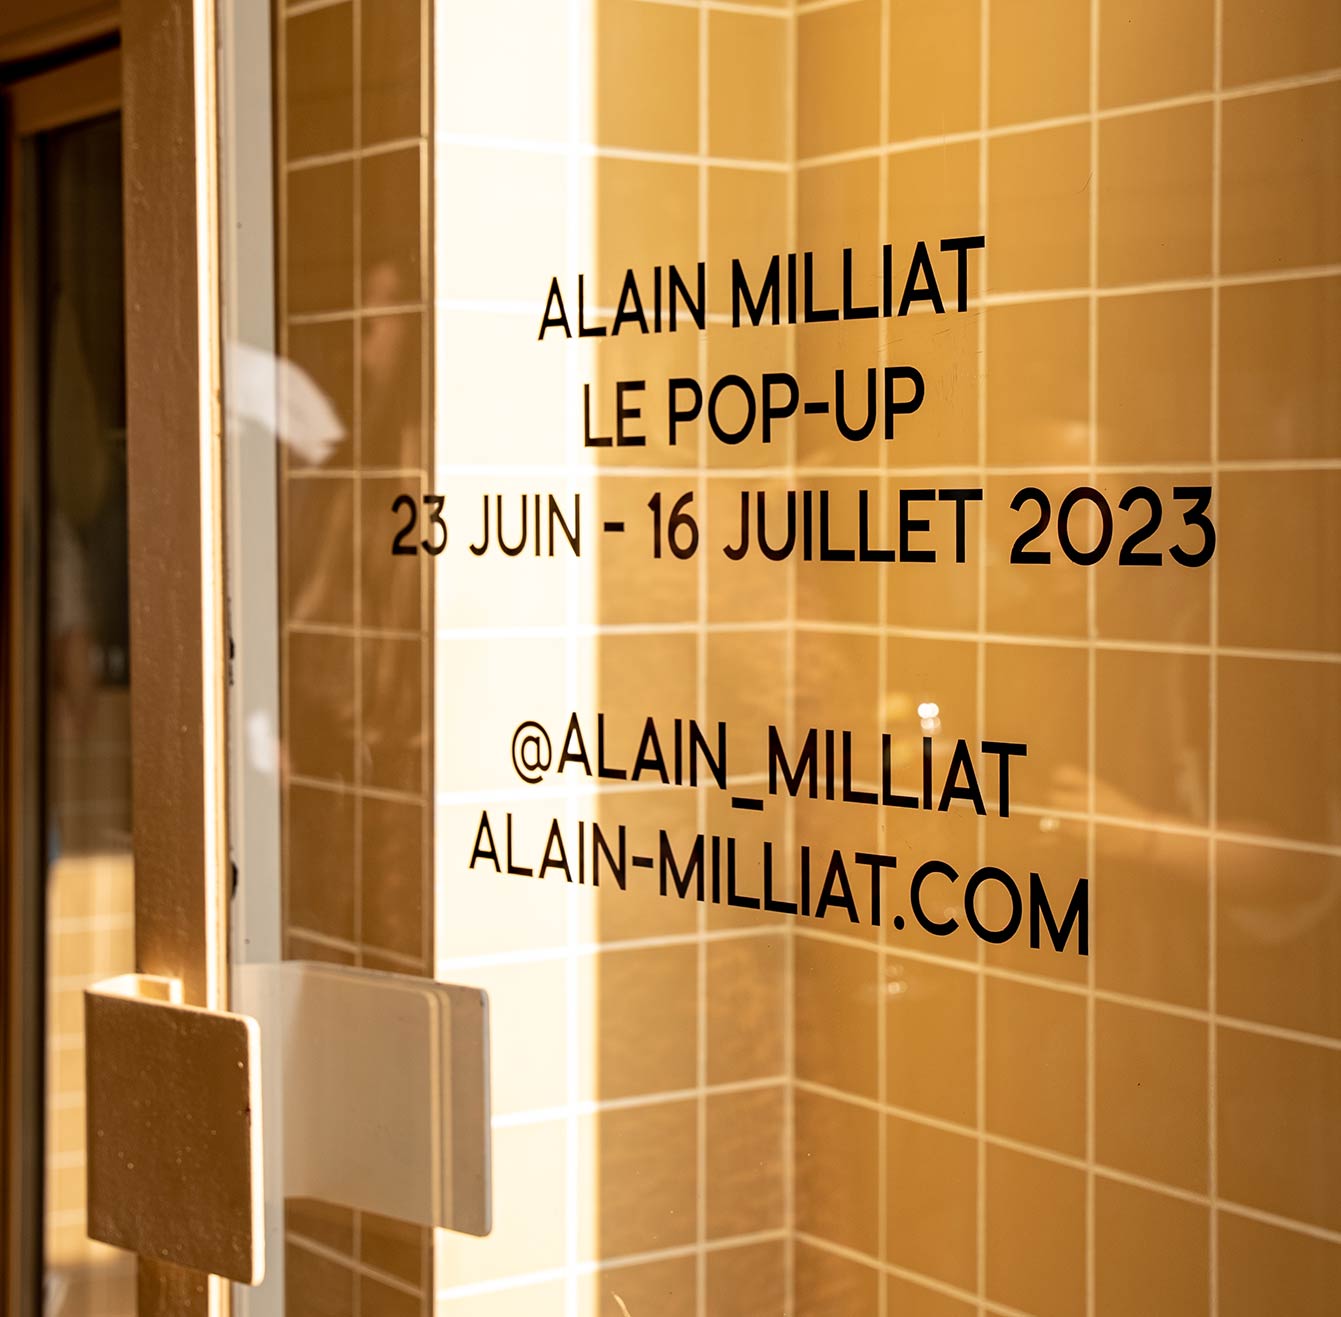 Le Pop up Alain Milliat